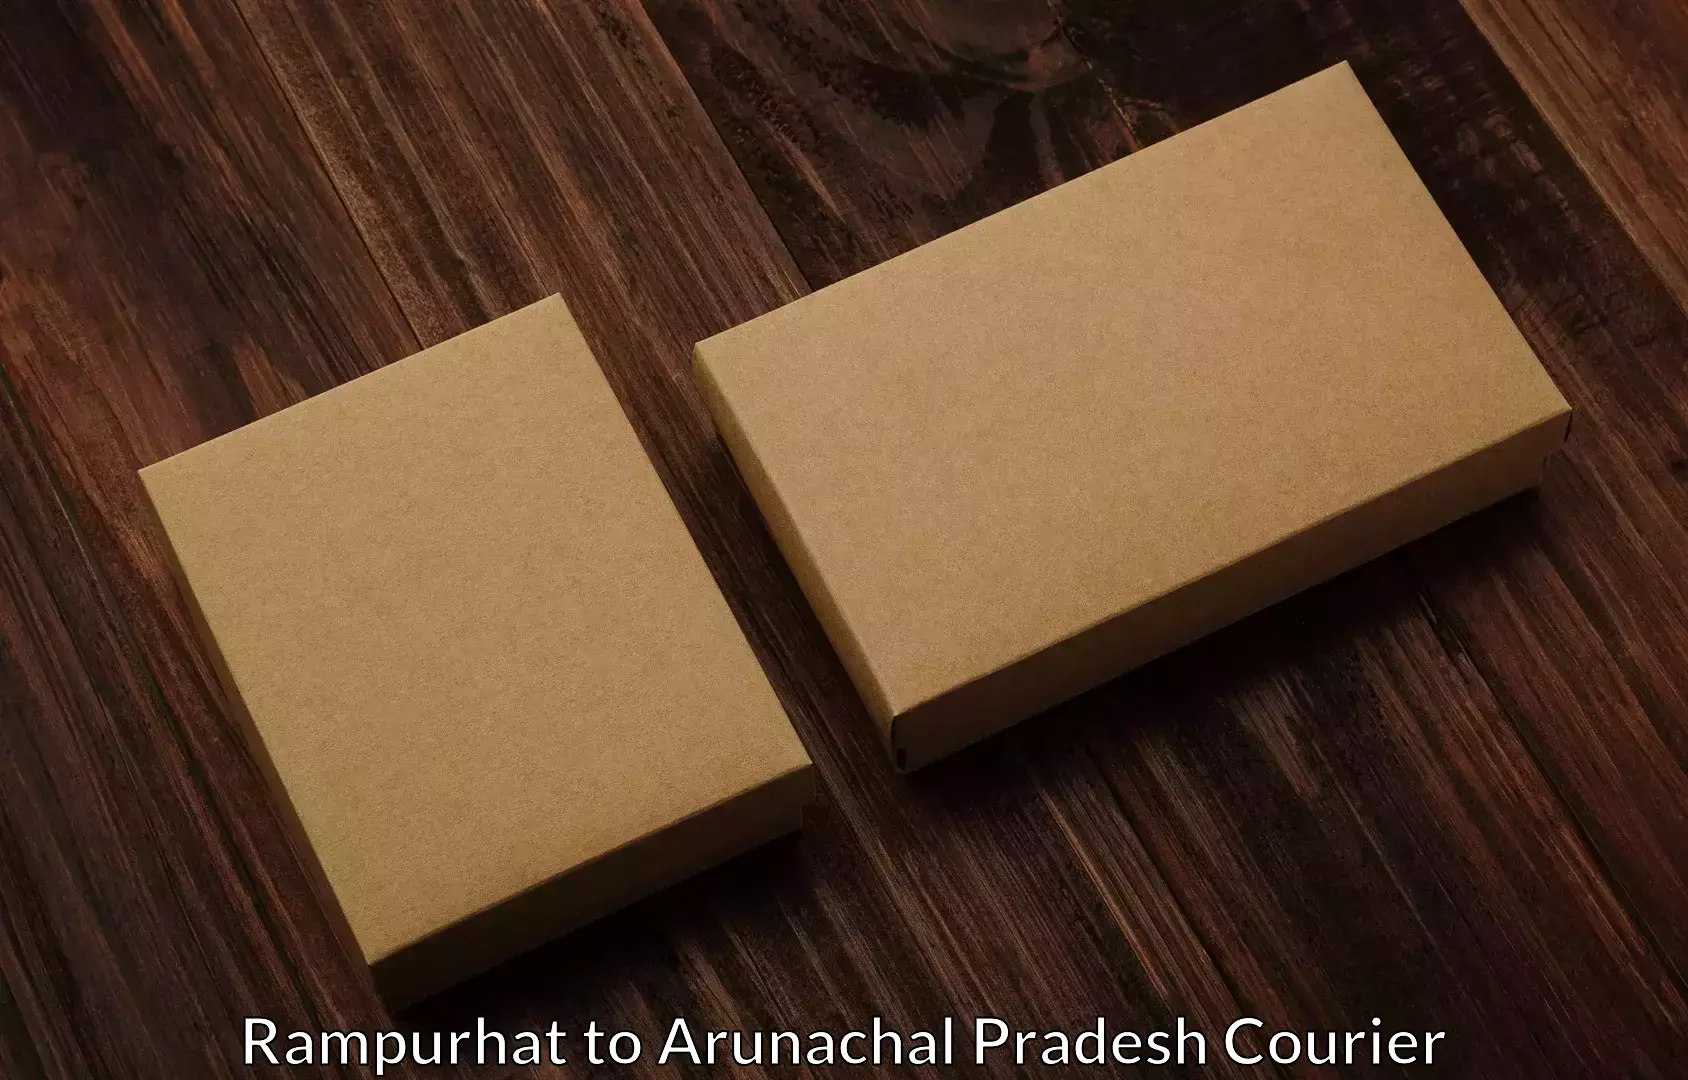 Efficient moving services Rampurhat to Arunachal Pradesh